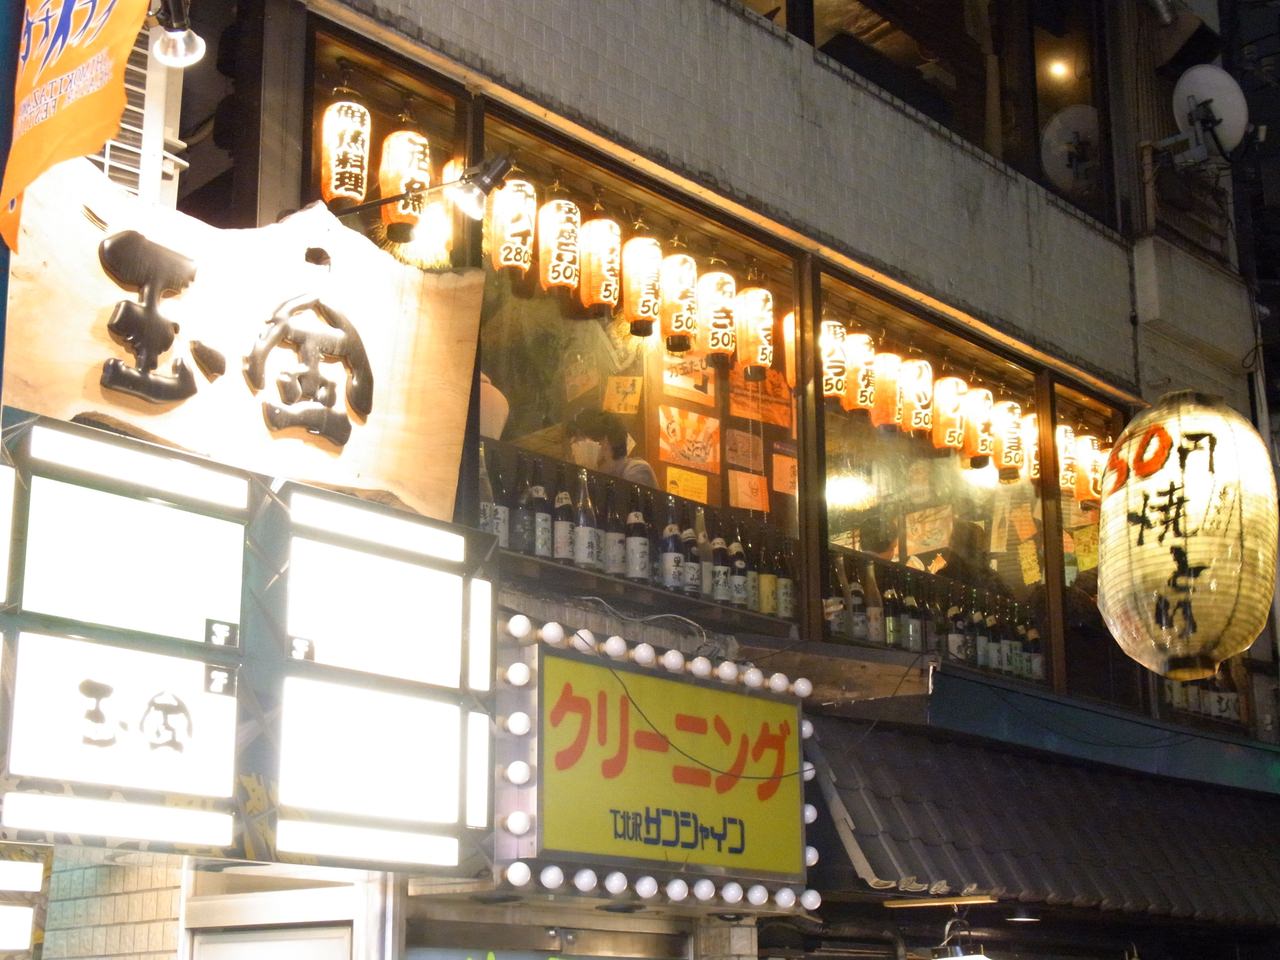 下北沢駅 東京都 周辺500m 居酒屋 深夜まで食事のできるお店 飲み放題ありのグルメ お店情報 サントリーグルメガイド